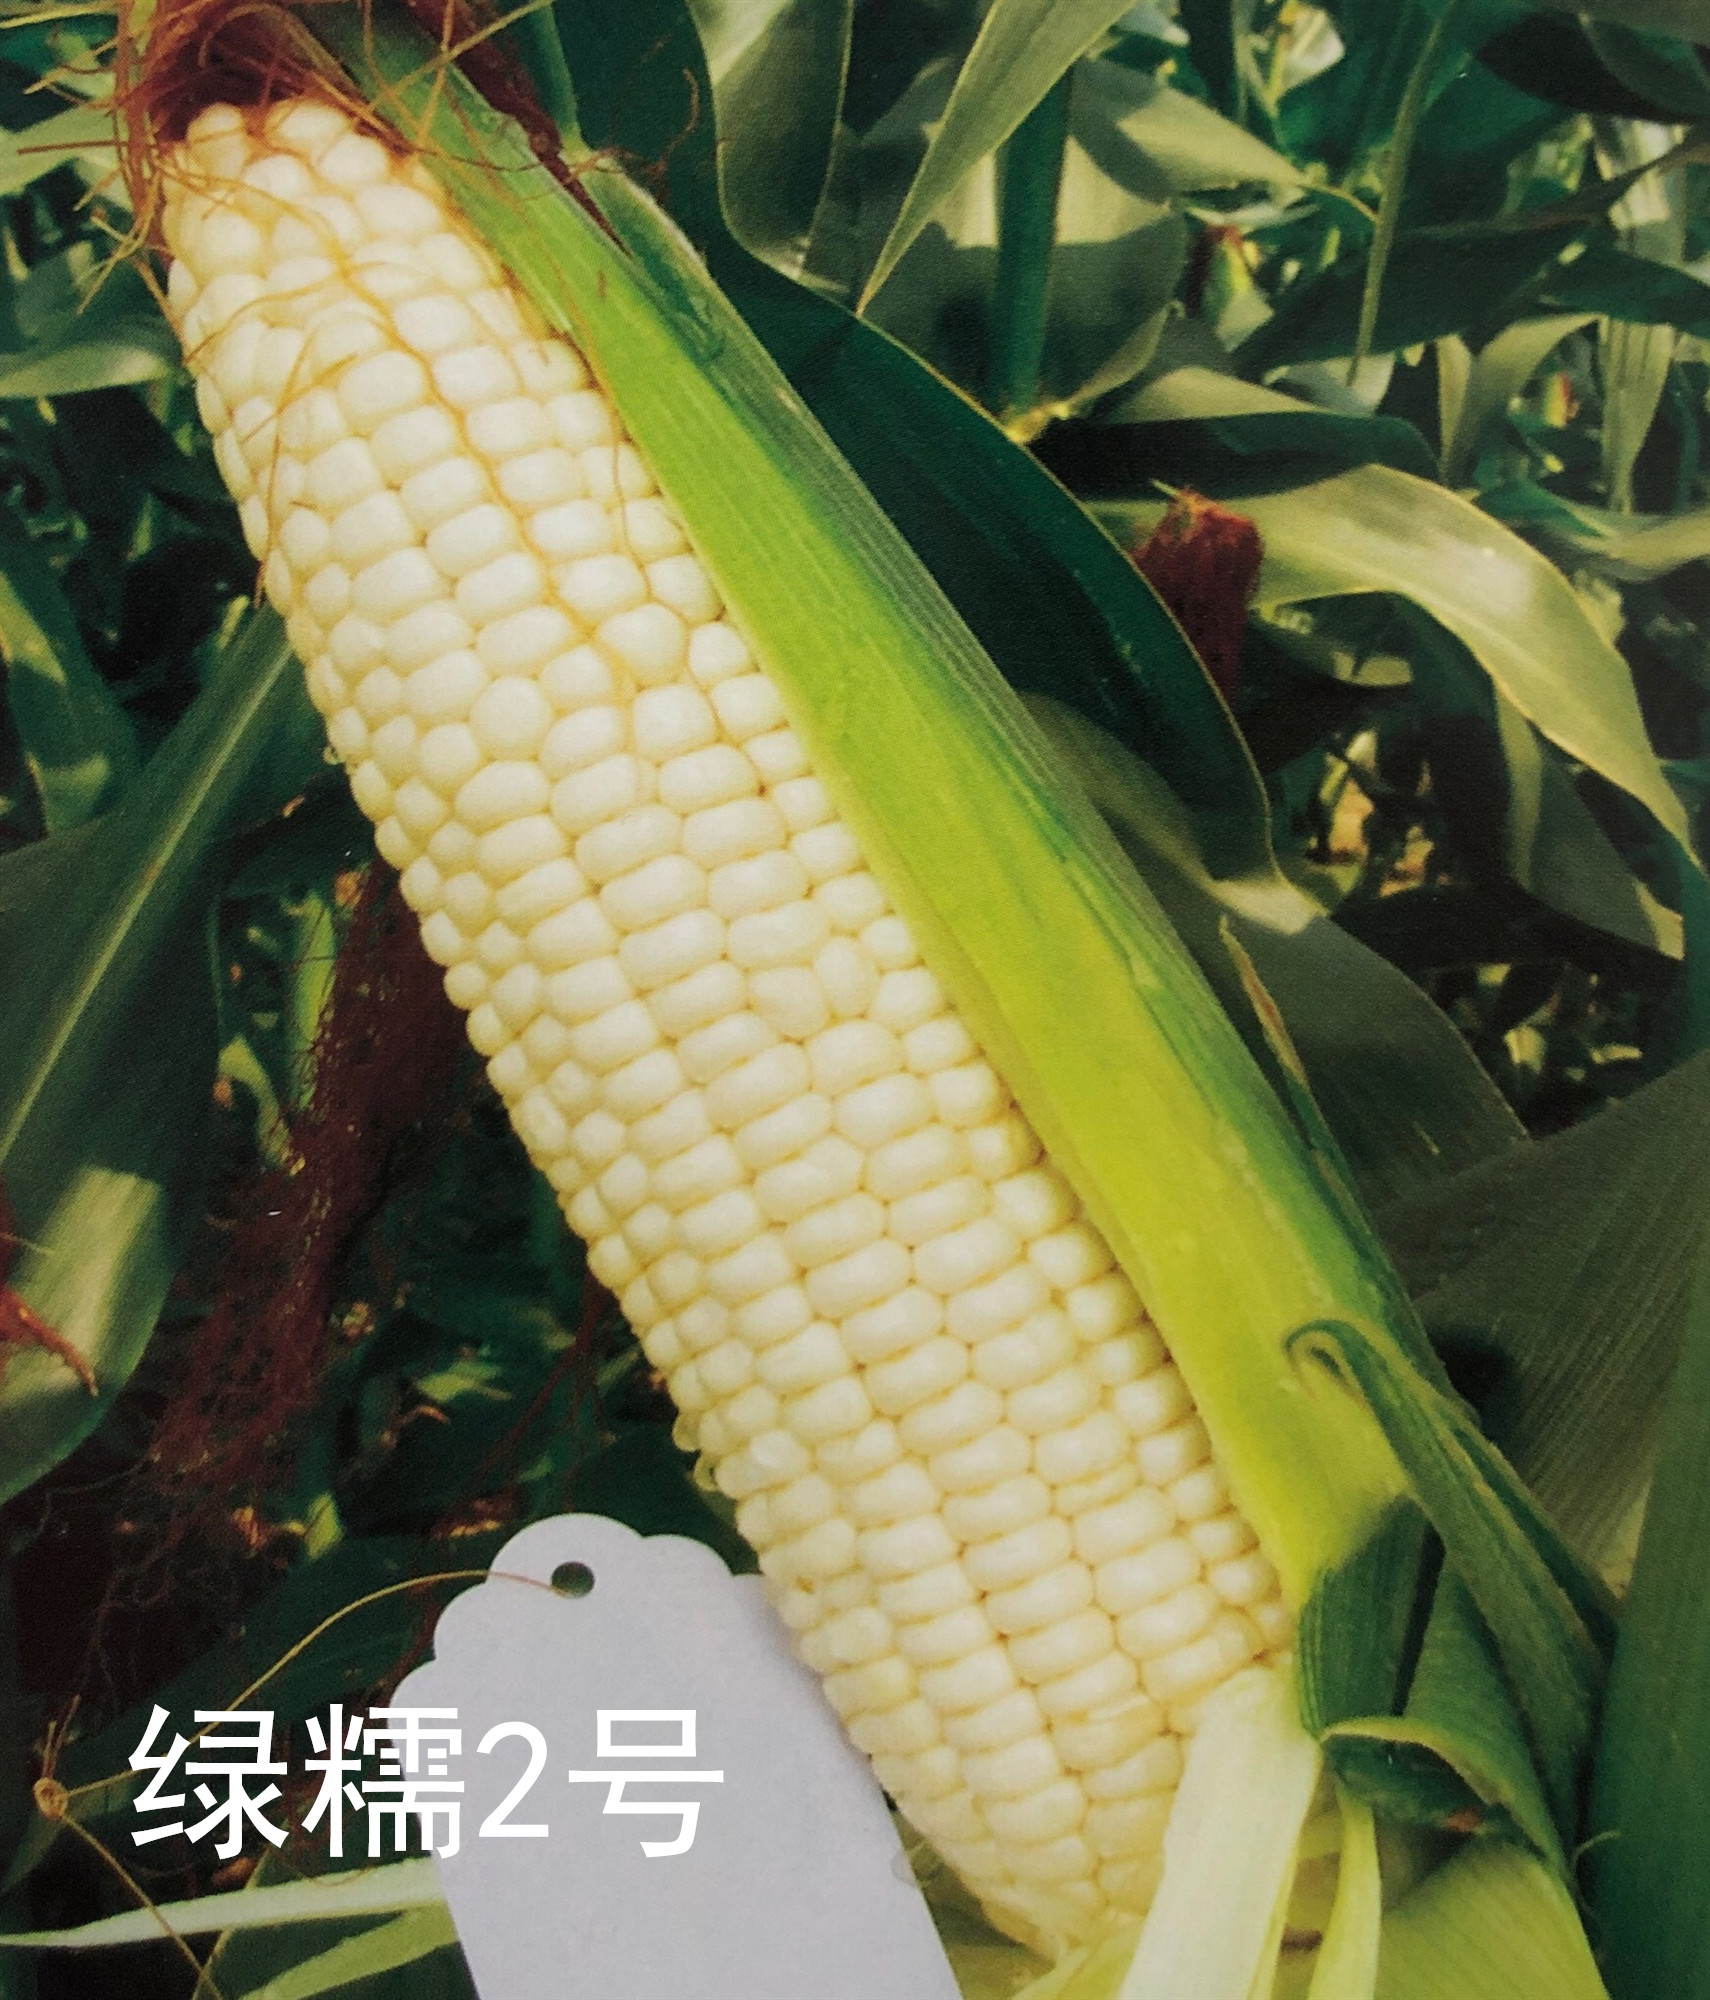 绿糯2号在安徽荣获2019鲜食玉米品种风味金奖！